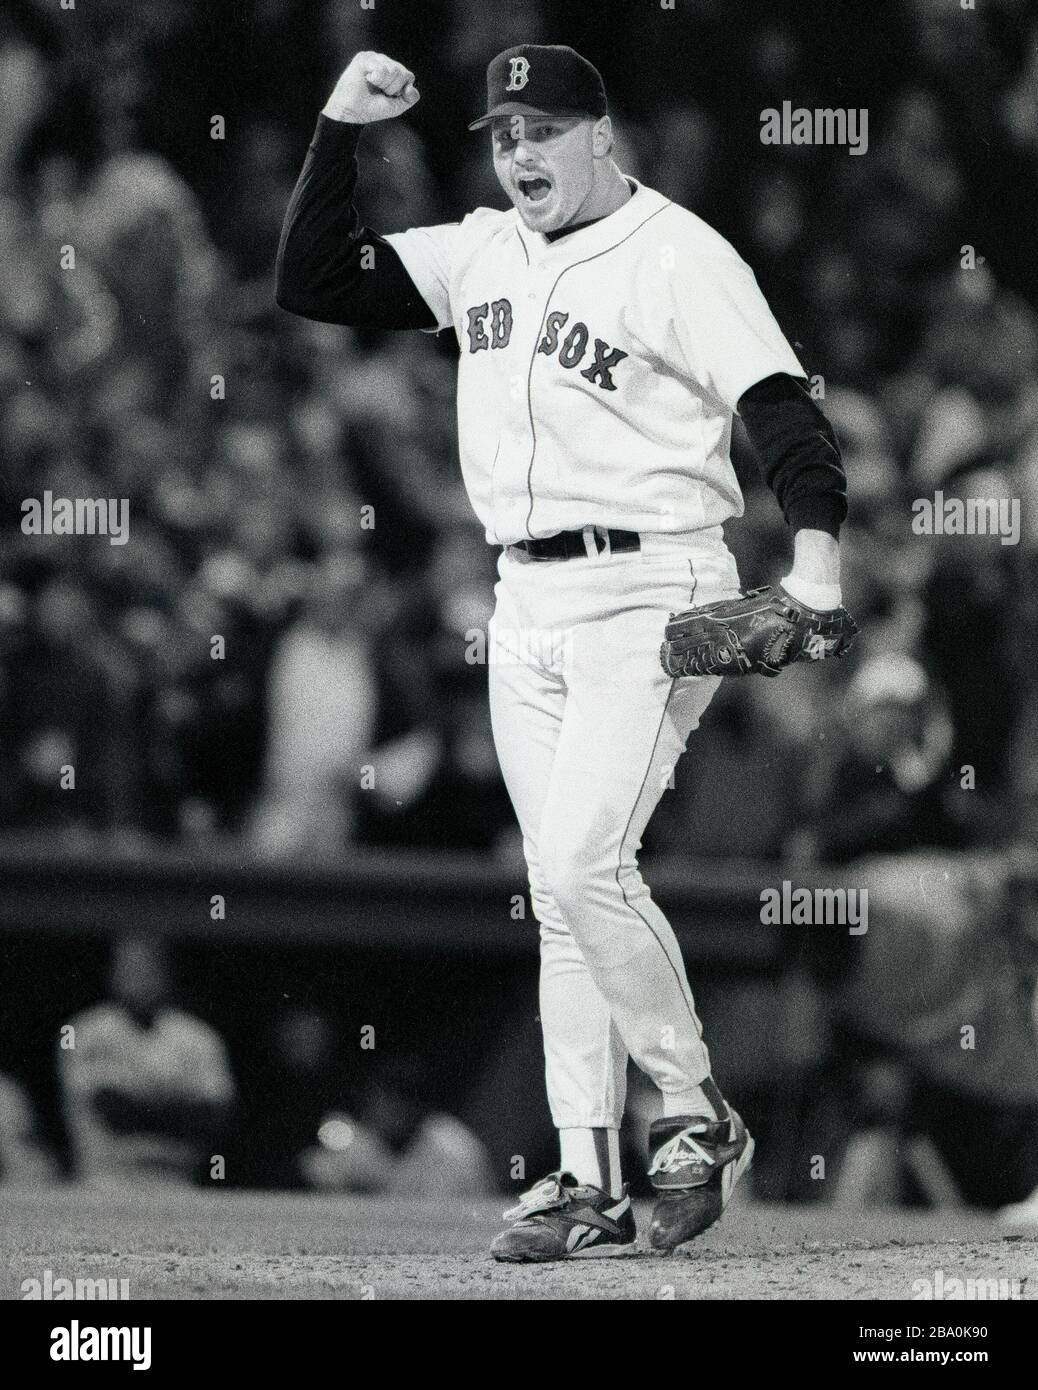 Roger Clemens, lanciatore dei Boston Red Sox, reagisce mentre colpisce una pastella durante l'azione di gioco al Fenway Park di Boston ma USA 1994 foto di Bill belknap Foto Stock